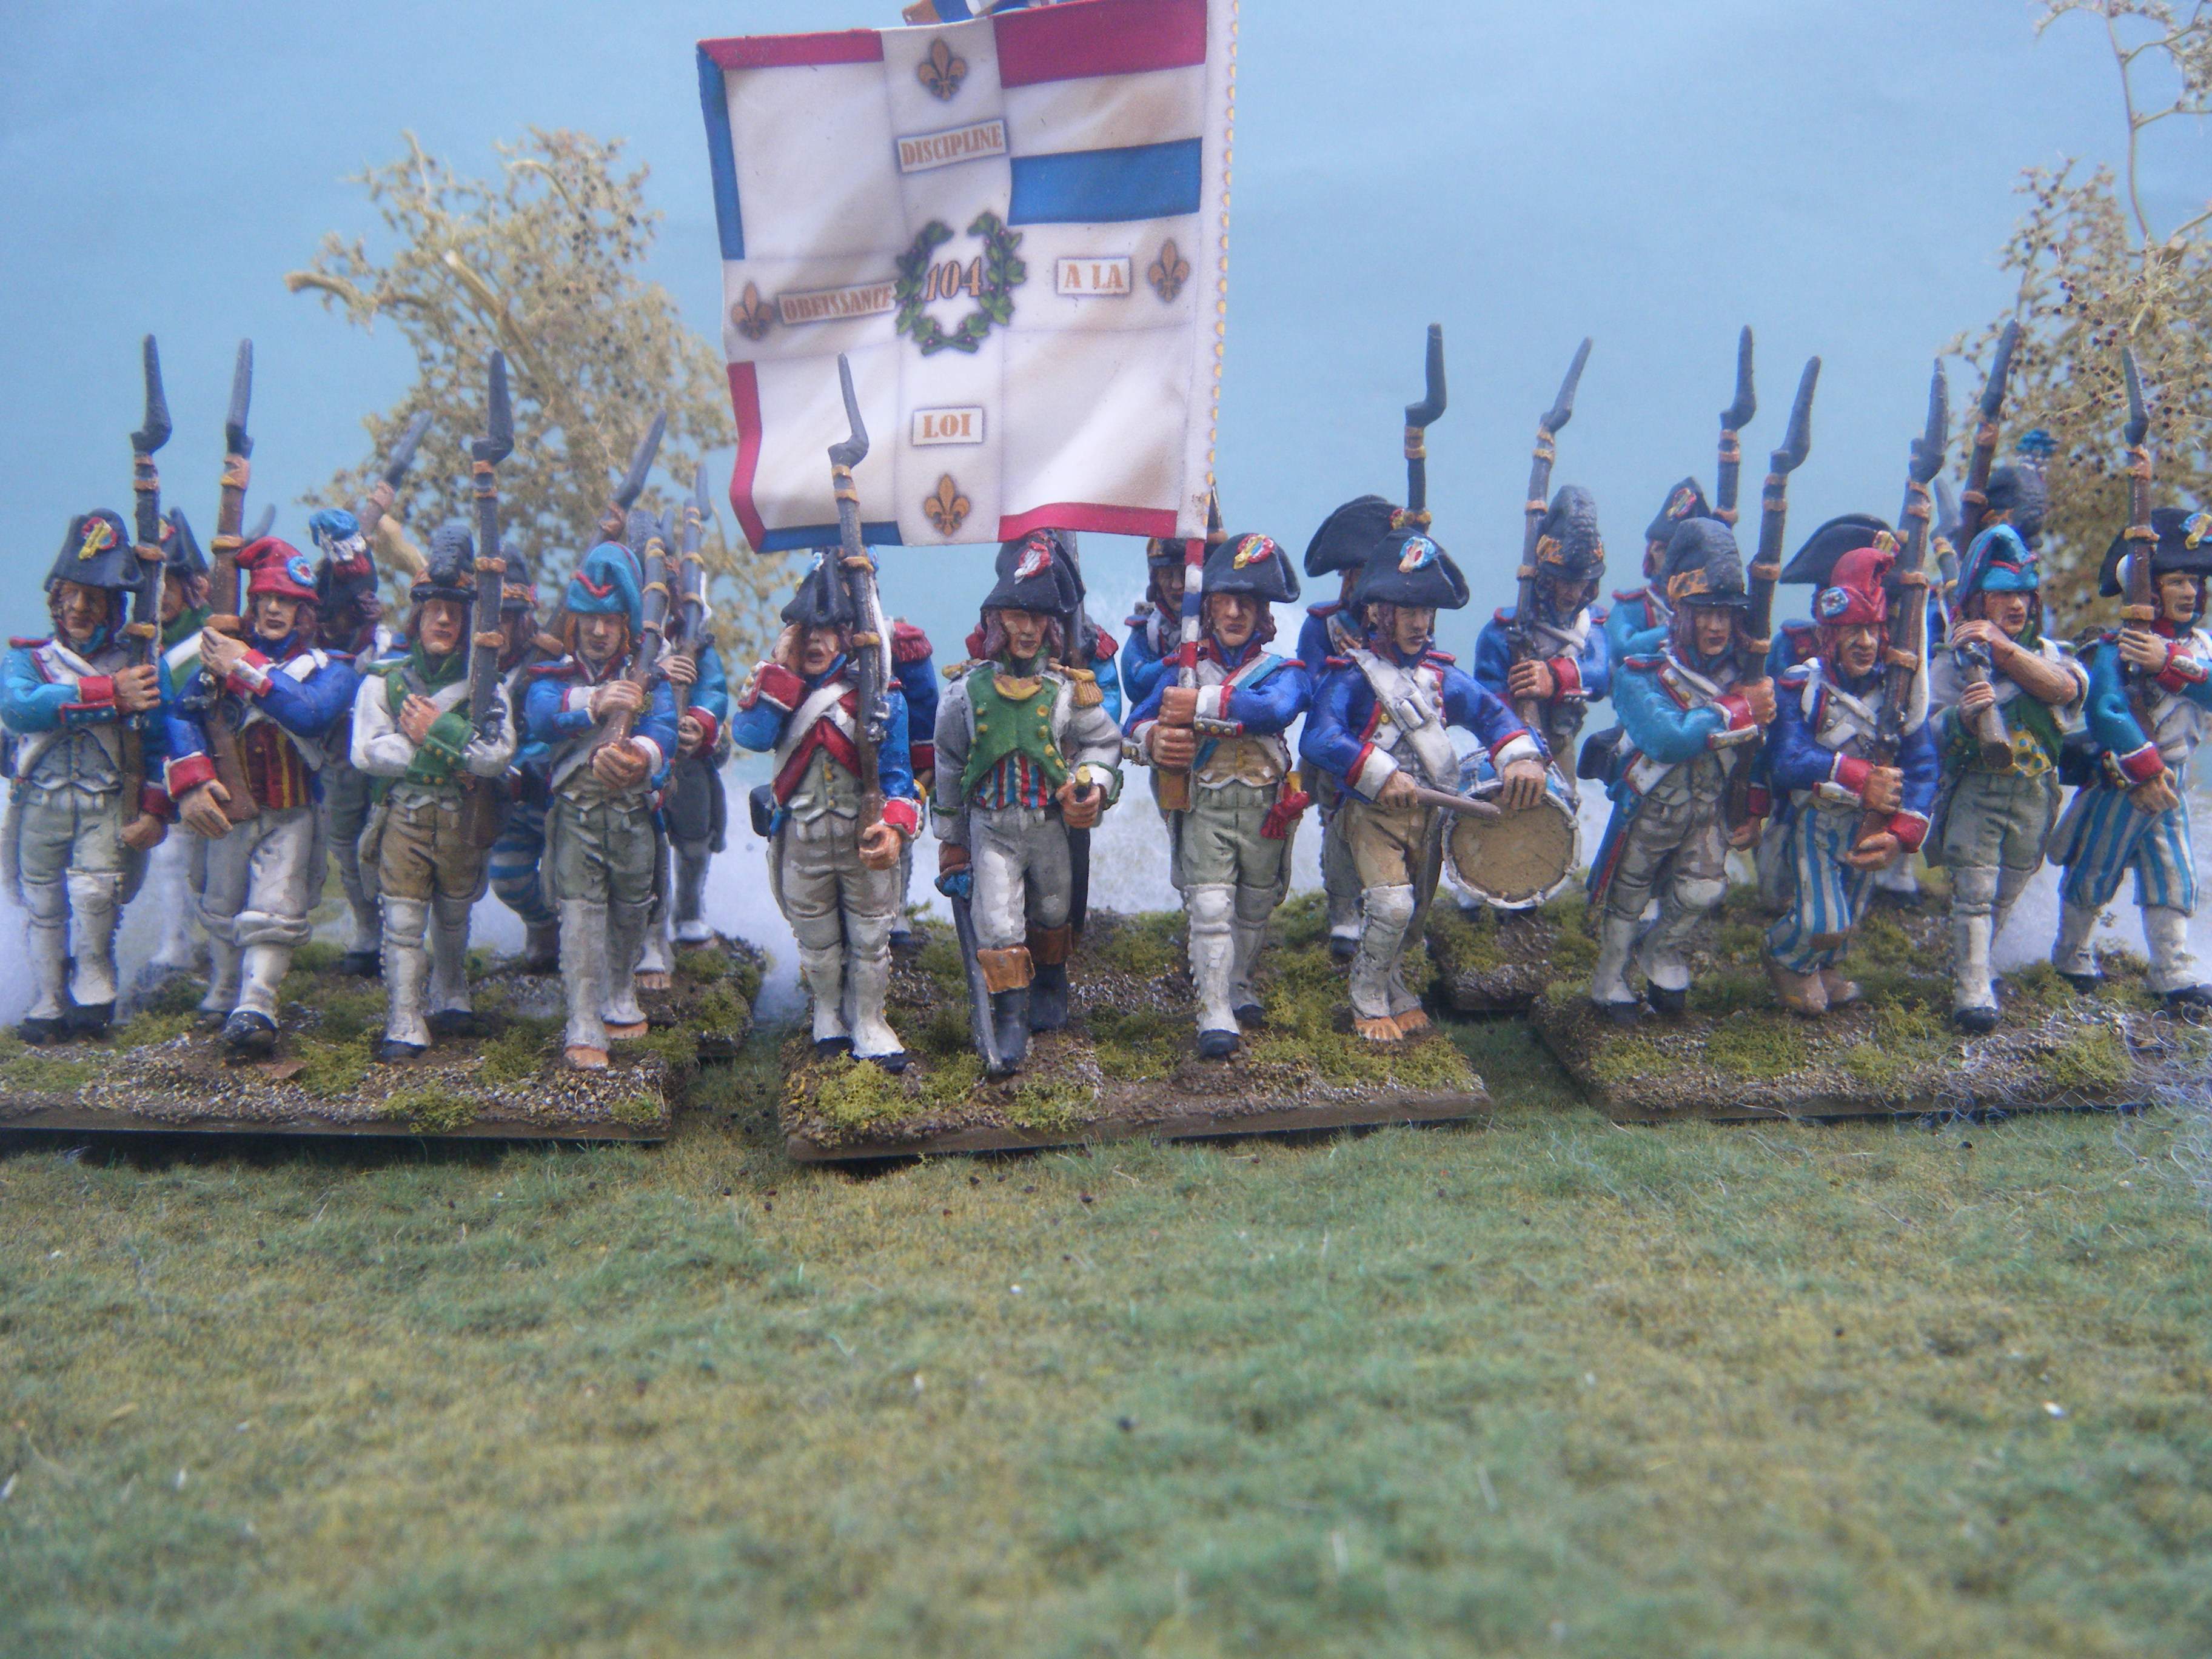 Levee en Masse 28mm French Revolutionary Infantry